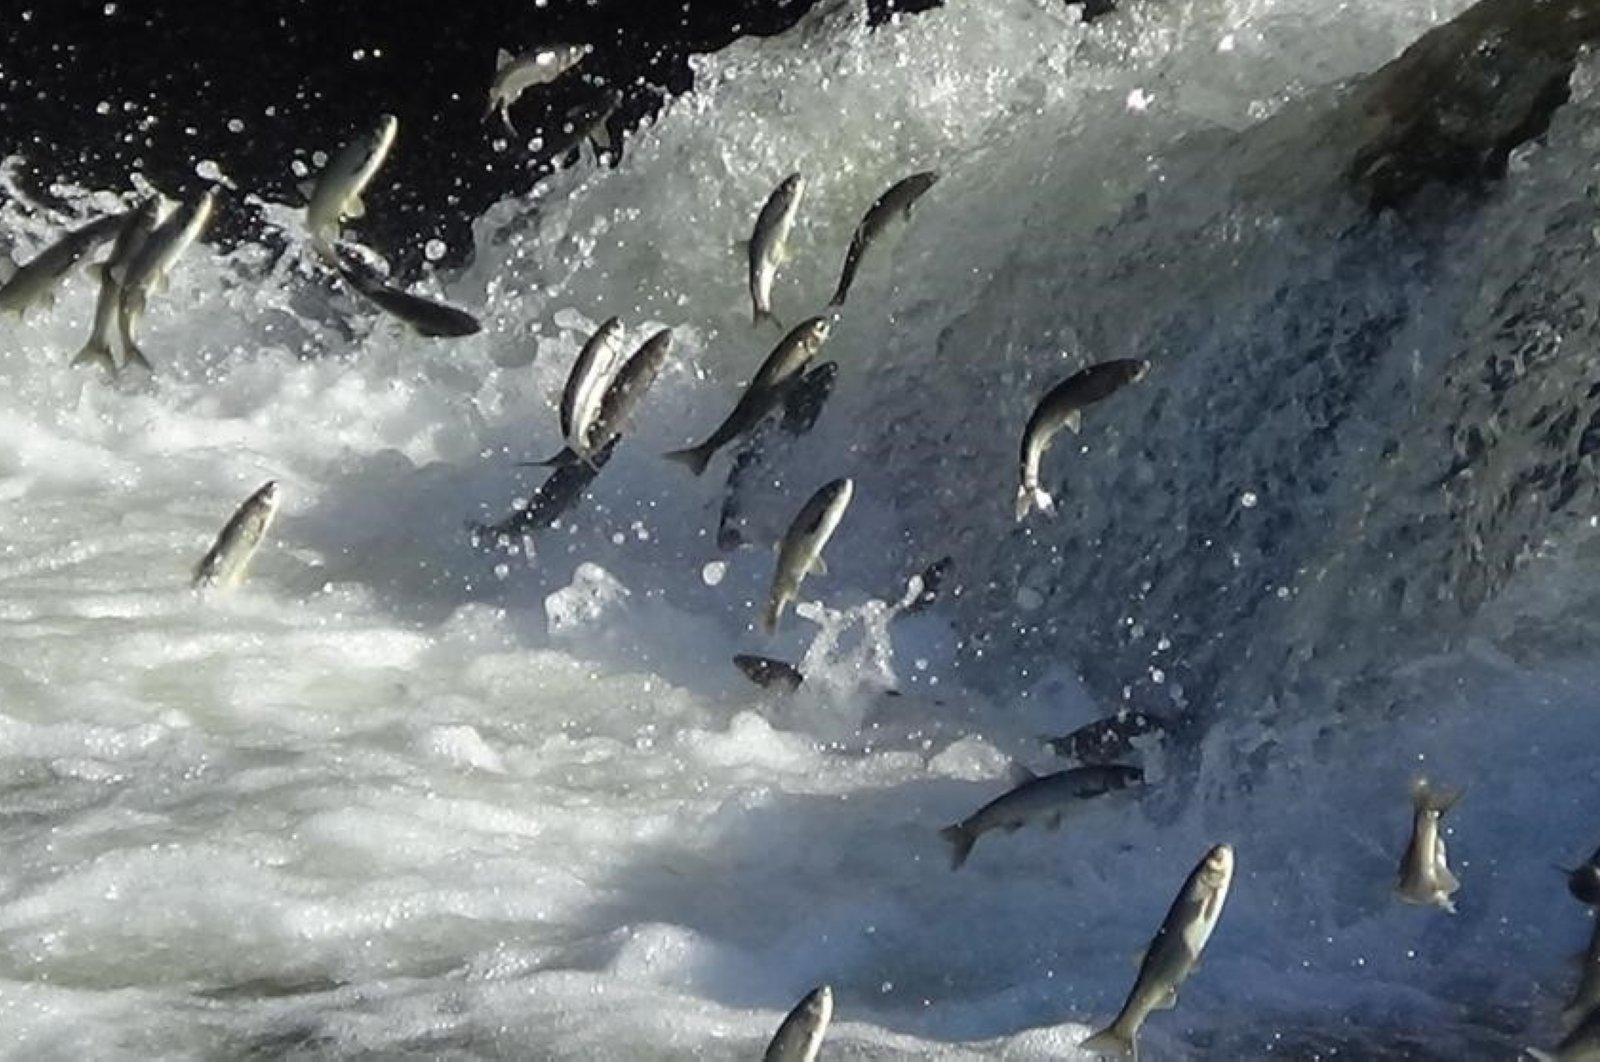 Upstream journey of endemic mullet fish begins in Türkiye’s Lake Van